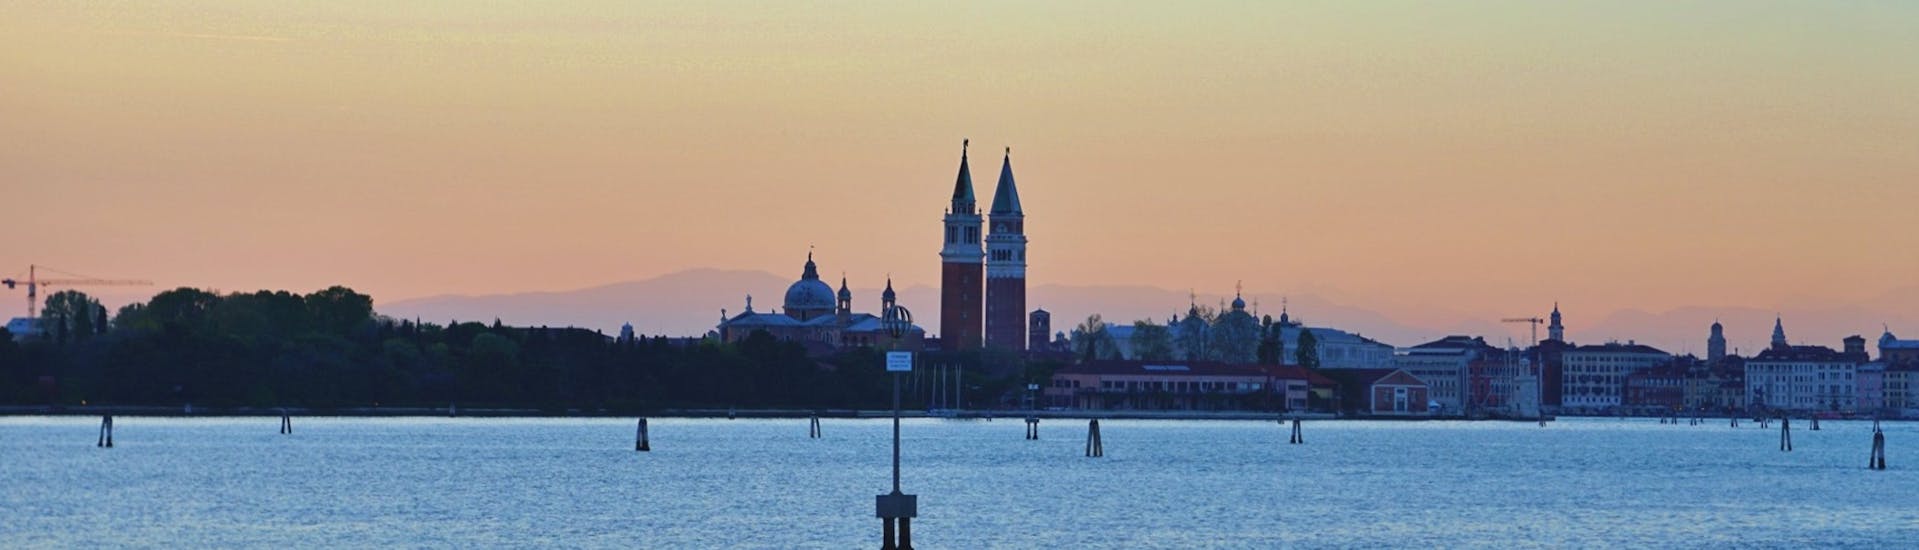 Blick auf Venedig vom Boot aus bei Sonnenuntergang während der Sunset Boat Trip in Venedig mit Il Doge di Venezia.